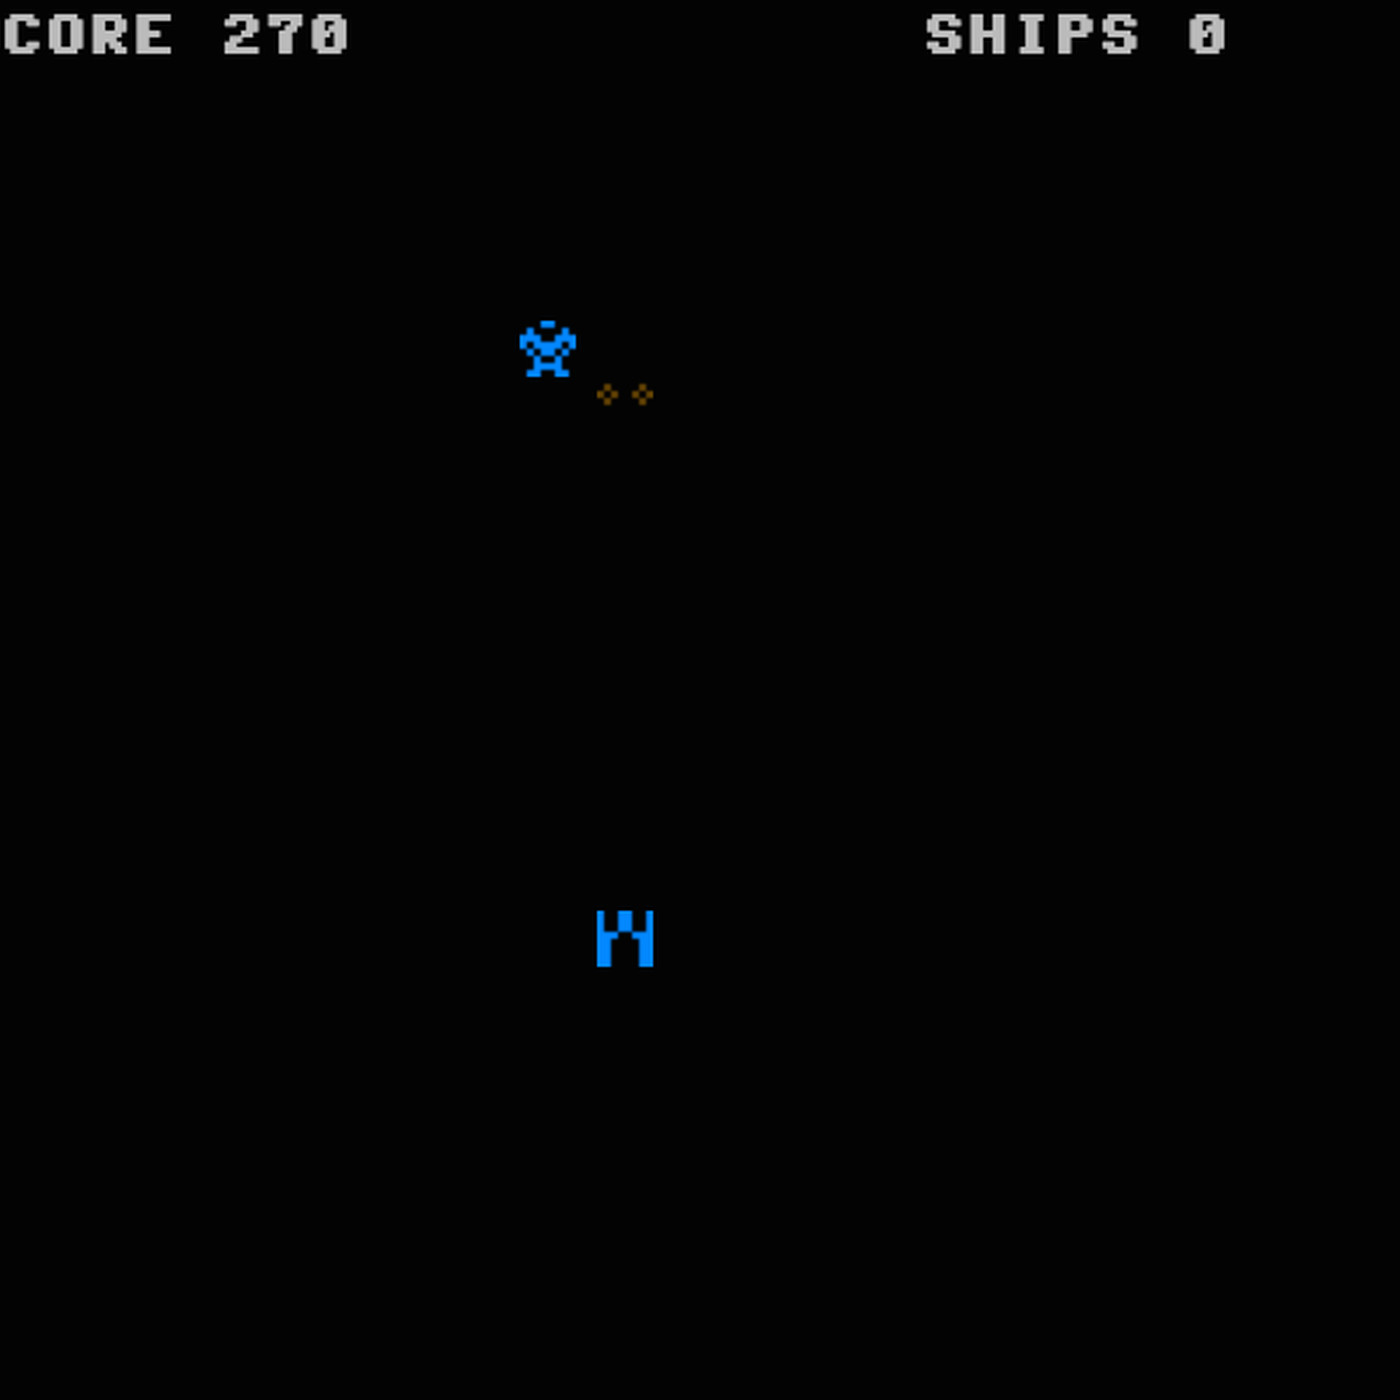 Игра Blastar, разработанная Илоном Маском в 1984 году на BASIC, когда ему было 12 лет